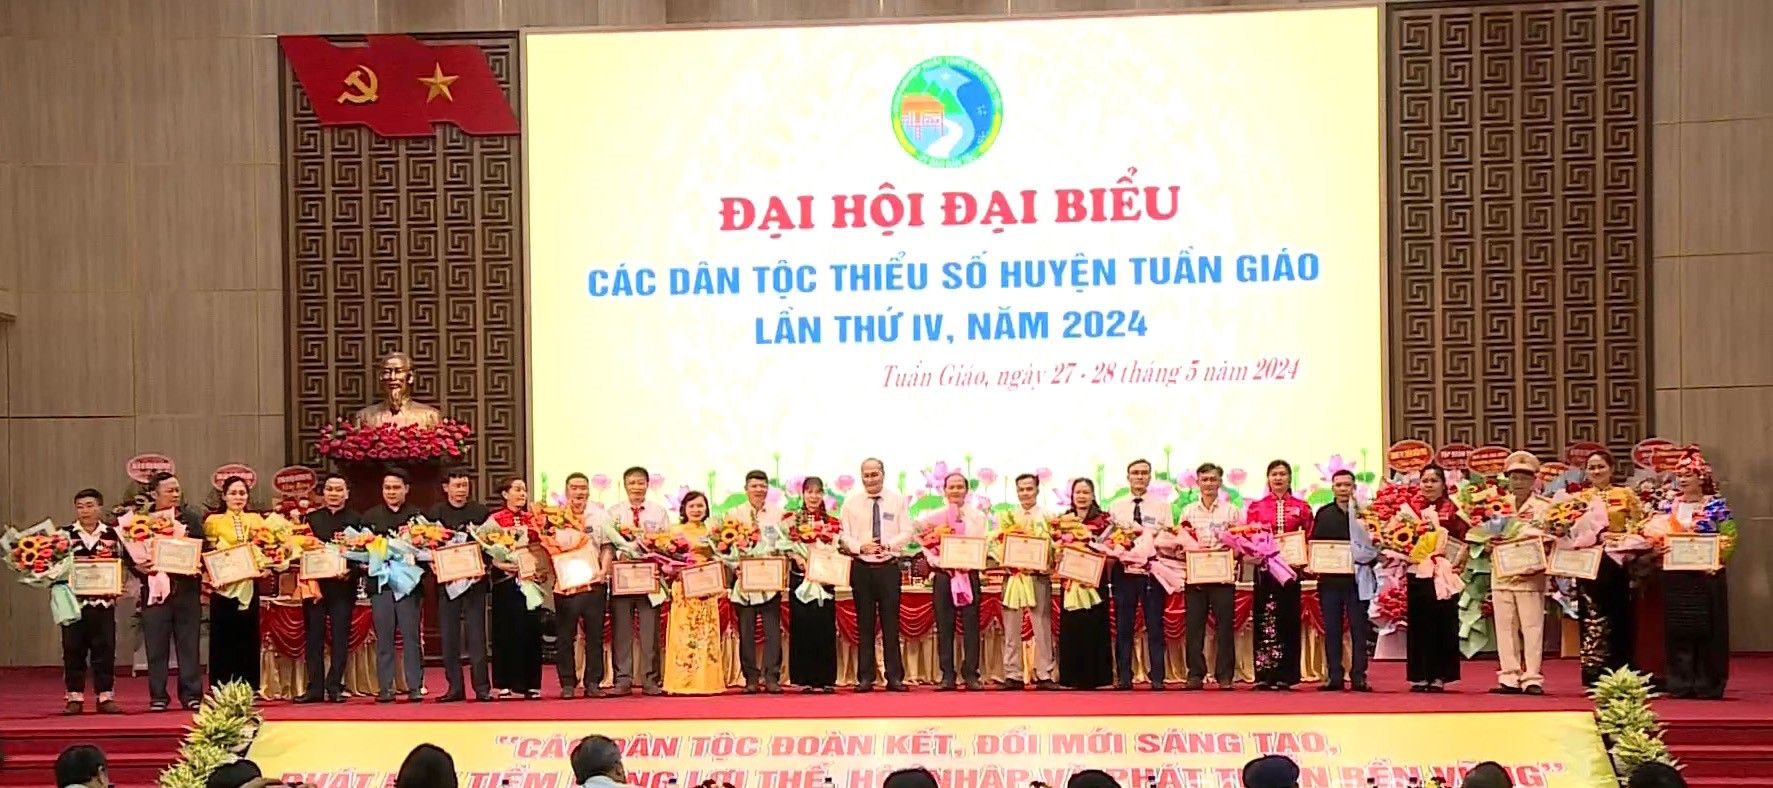 Điện Biên: Tích cực chuẩn bị Đại hội đại biểu các dân tộc thiểu số tỉnh